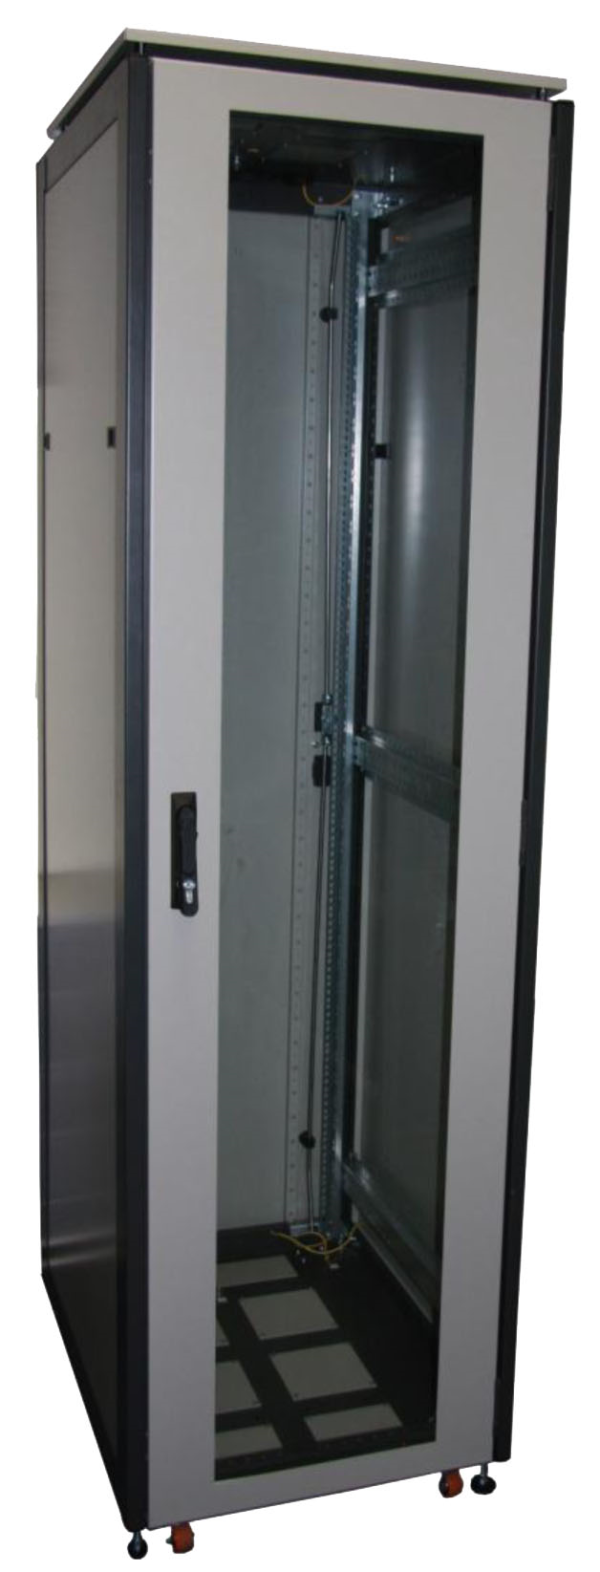 ССКТБ ТОМАСС ШТК-6820Э-01 - шкаф телекоммуникационный 19", 42U, 600х800х2000 мм, с металлической задней панелью и стеклянной дверью